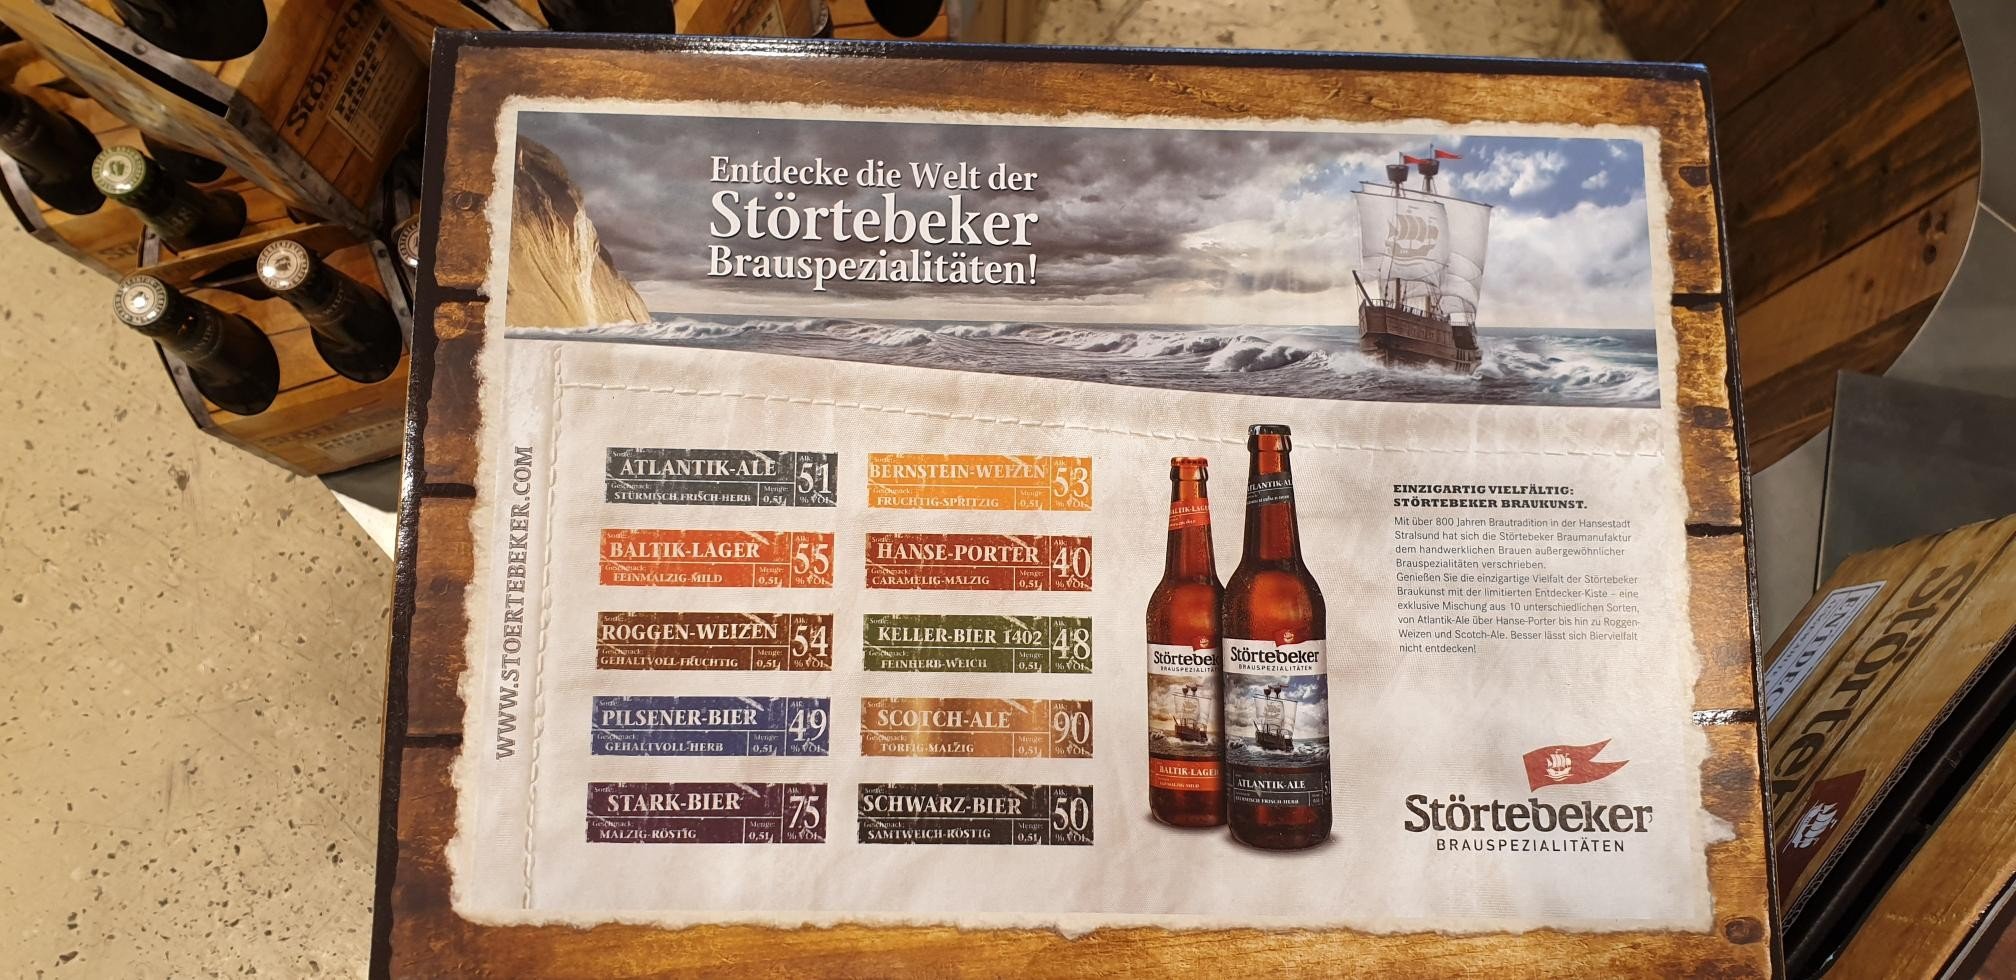 Störtebeker Brauspezialitäten Brauerei aus Deutschland